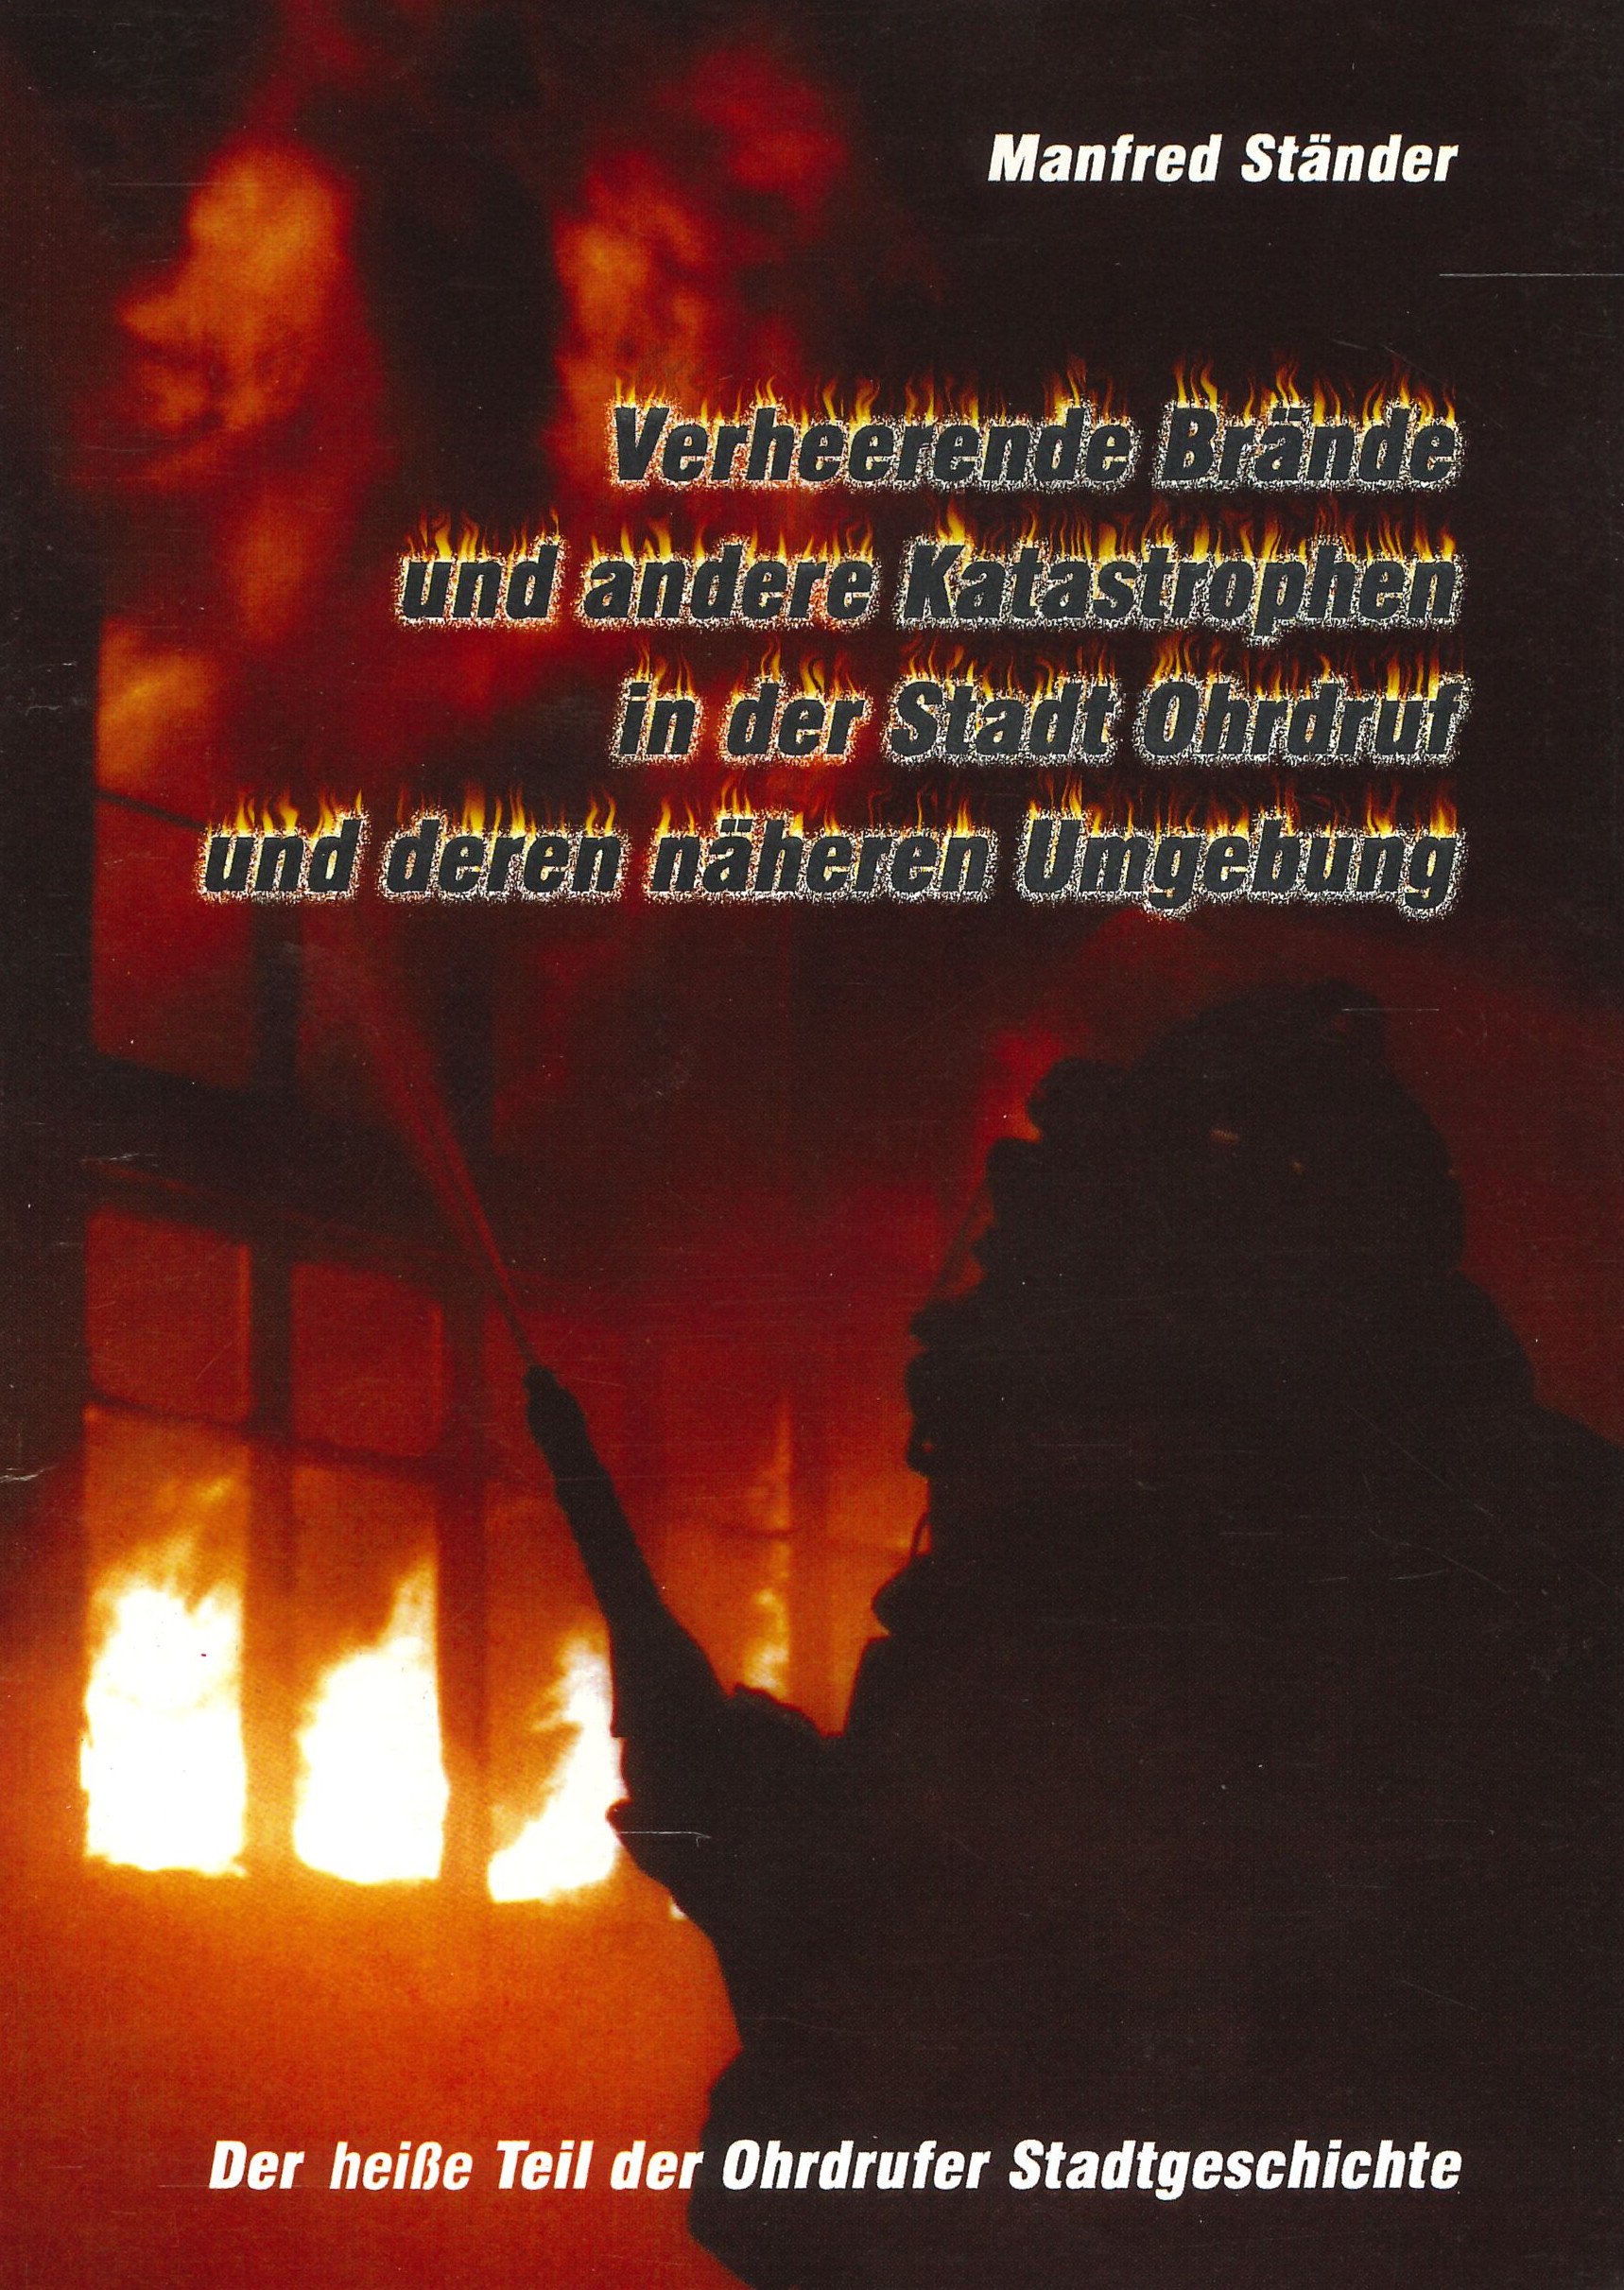 Verheerende Brände und andere Katastrophen in der Stadt Ohrdruf und deren näheren Umgebung (Feuerwehrmuseum Grethen CC BY-NC-SA)